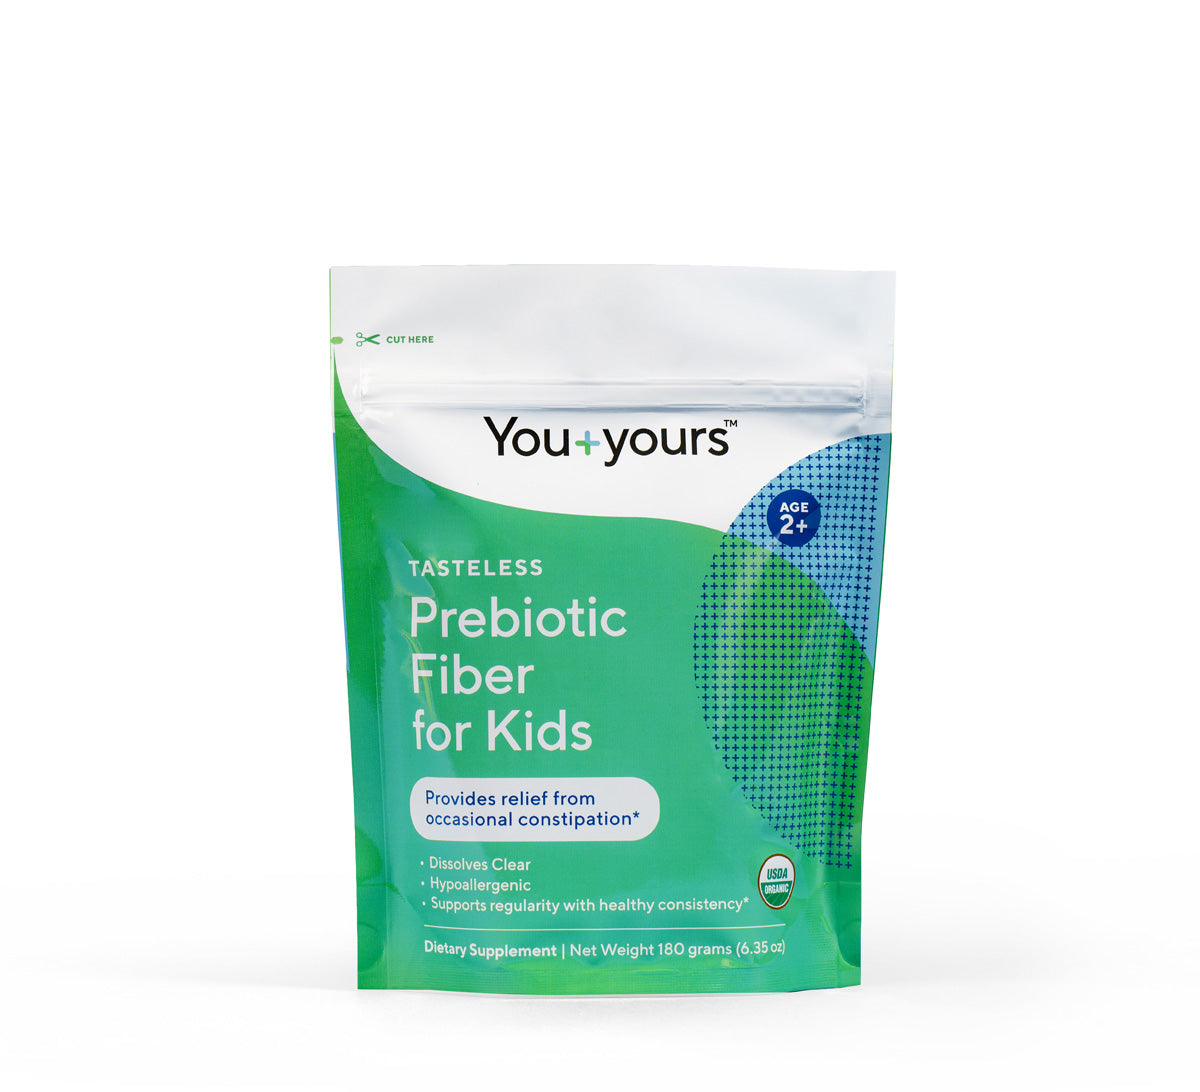 Tasteless Prebiotic Fiber for Kids